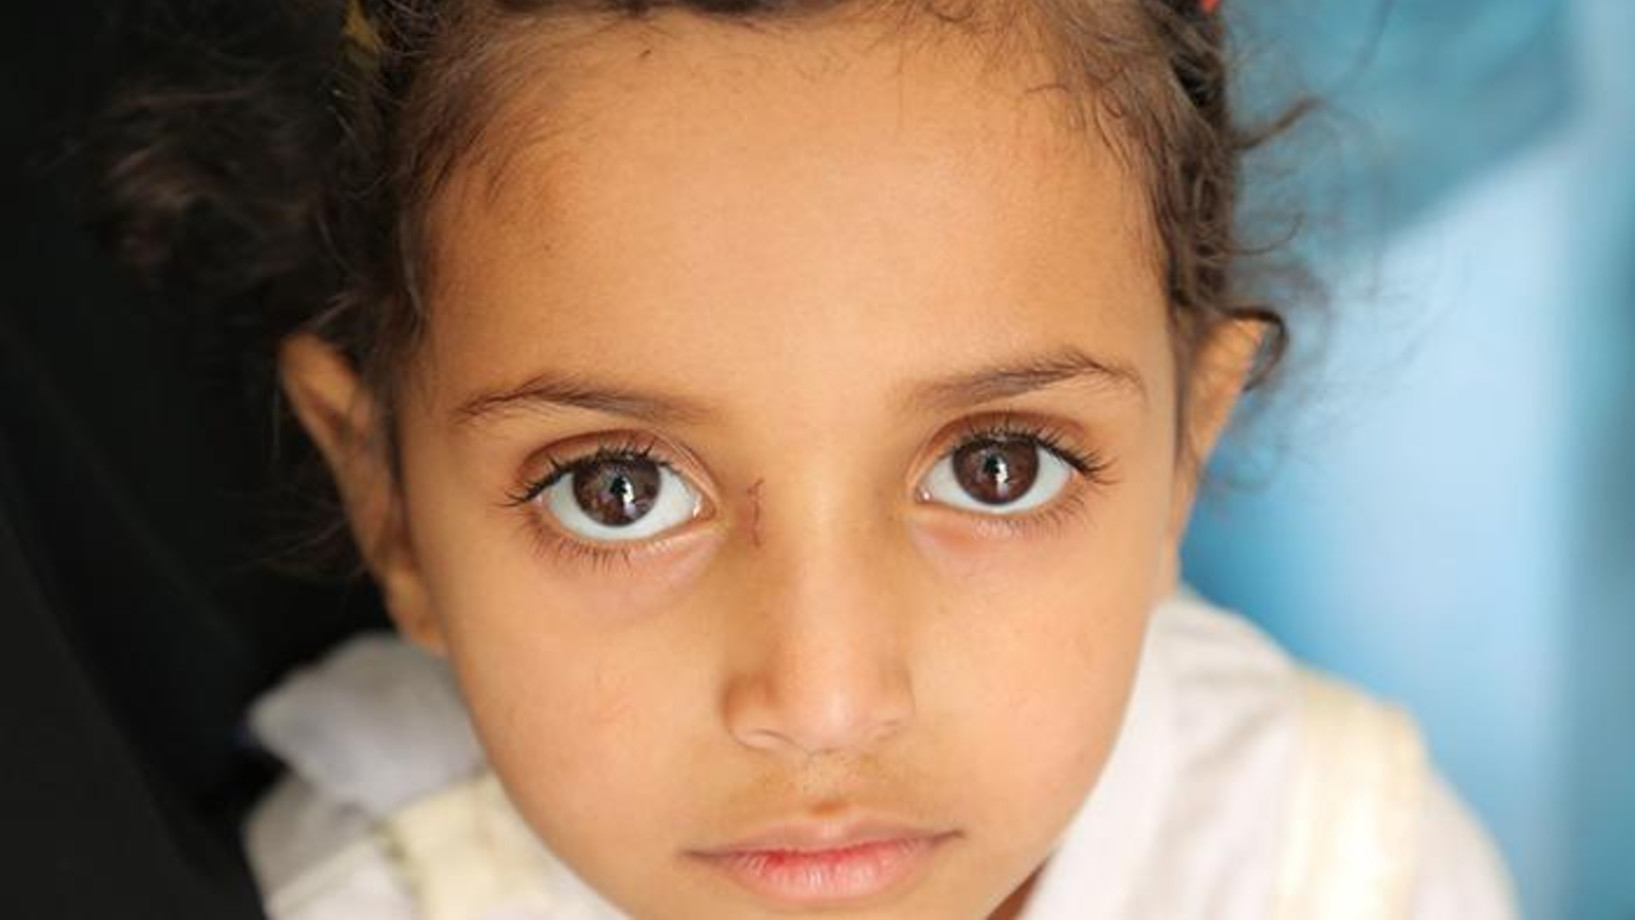 Child in Yemen 2018